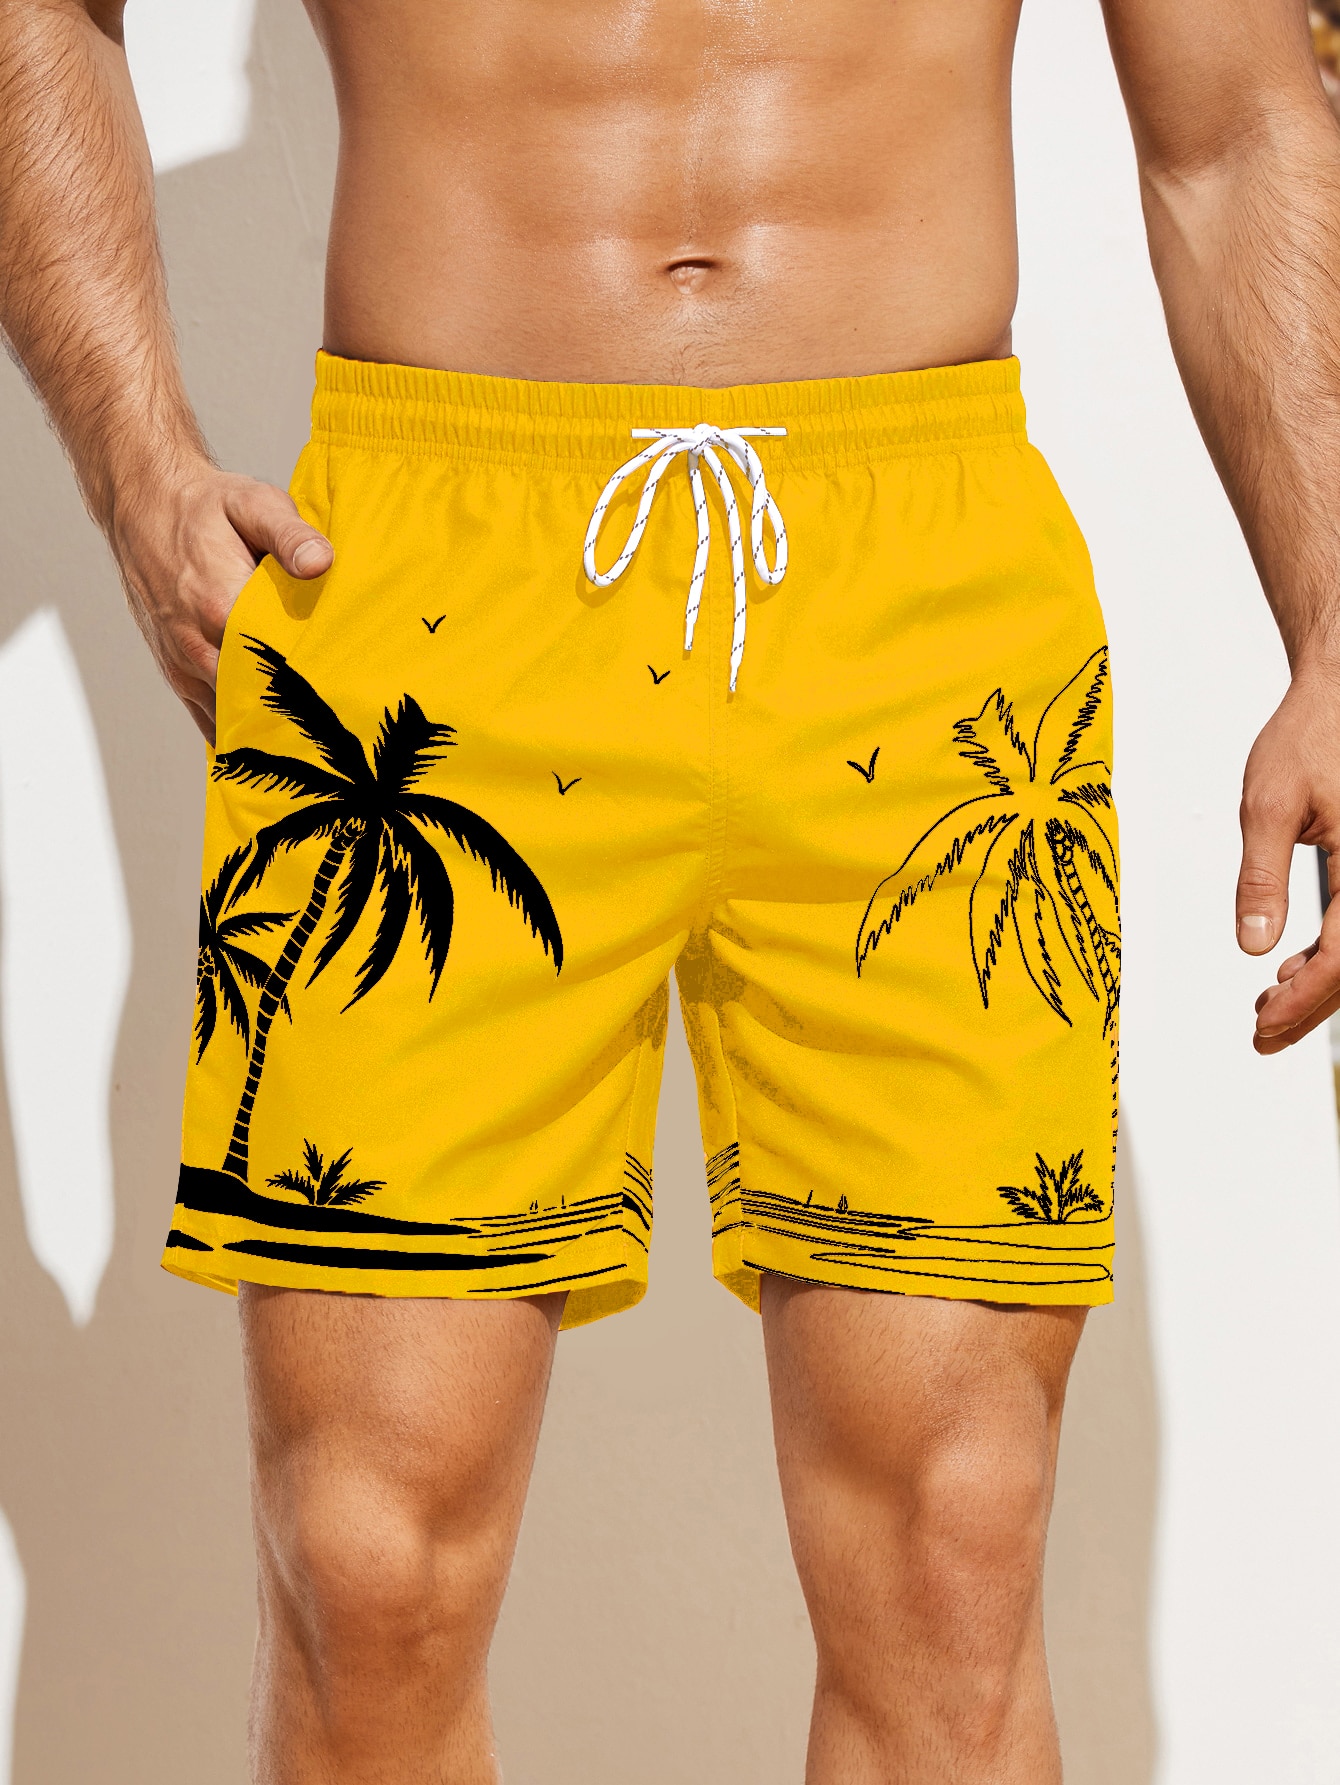 Мужские пляжные шорты с принтом пальм Manfinity, горчично-желтый